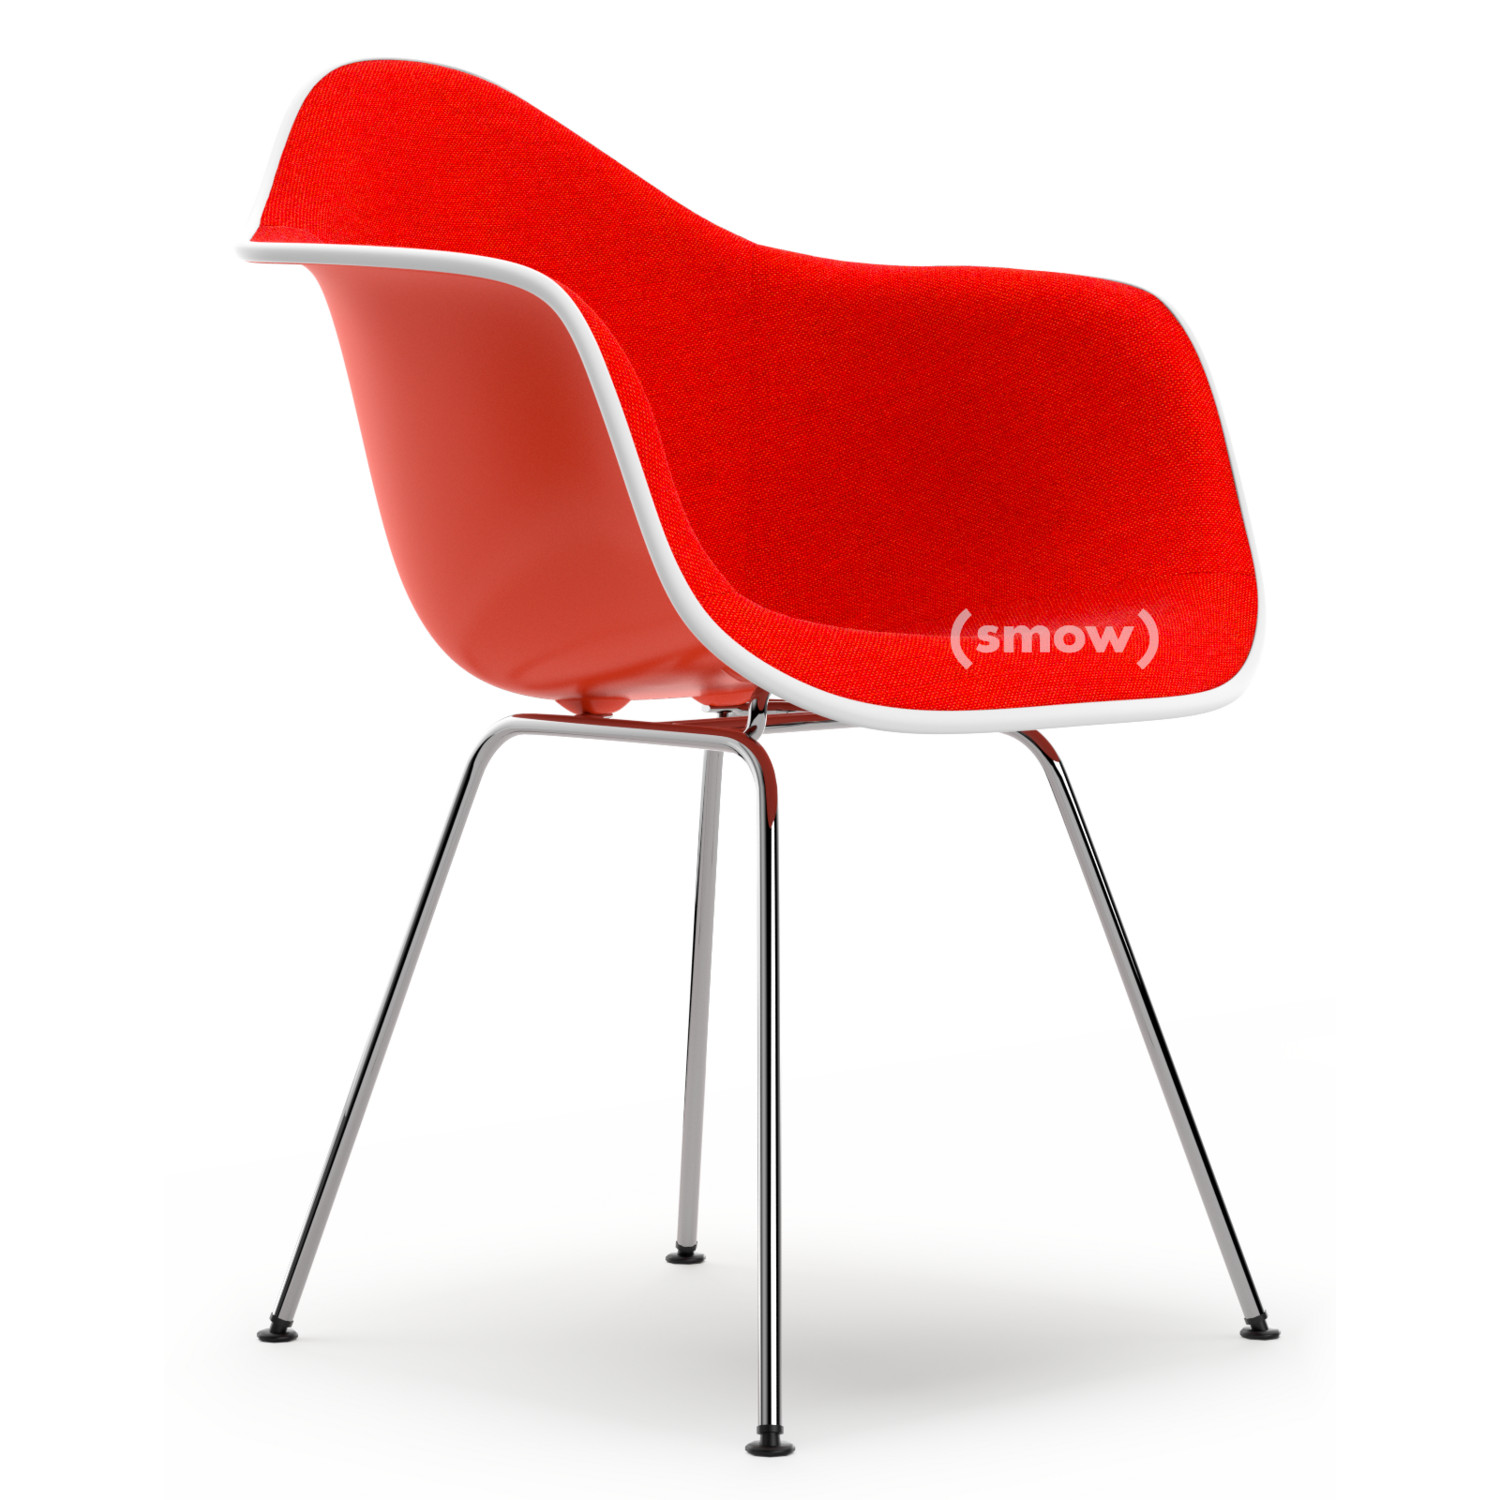 Seat cushion - felt cushion for Eames Plastic Arm Chairs (DAR / DAW), DAX  Parkhaus Berlin